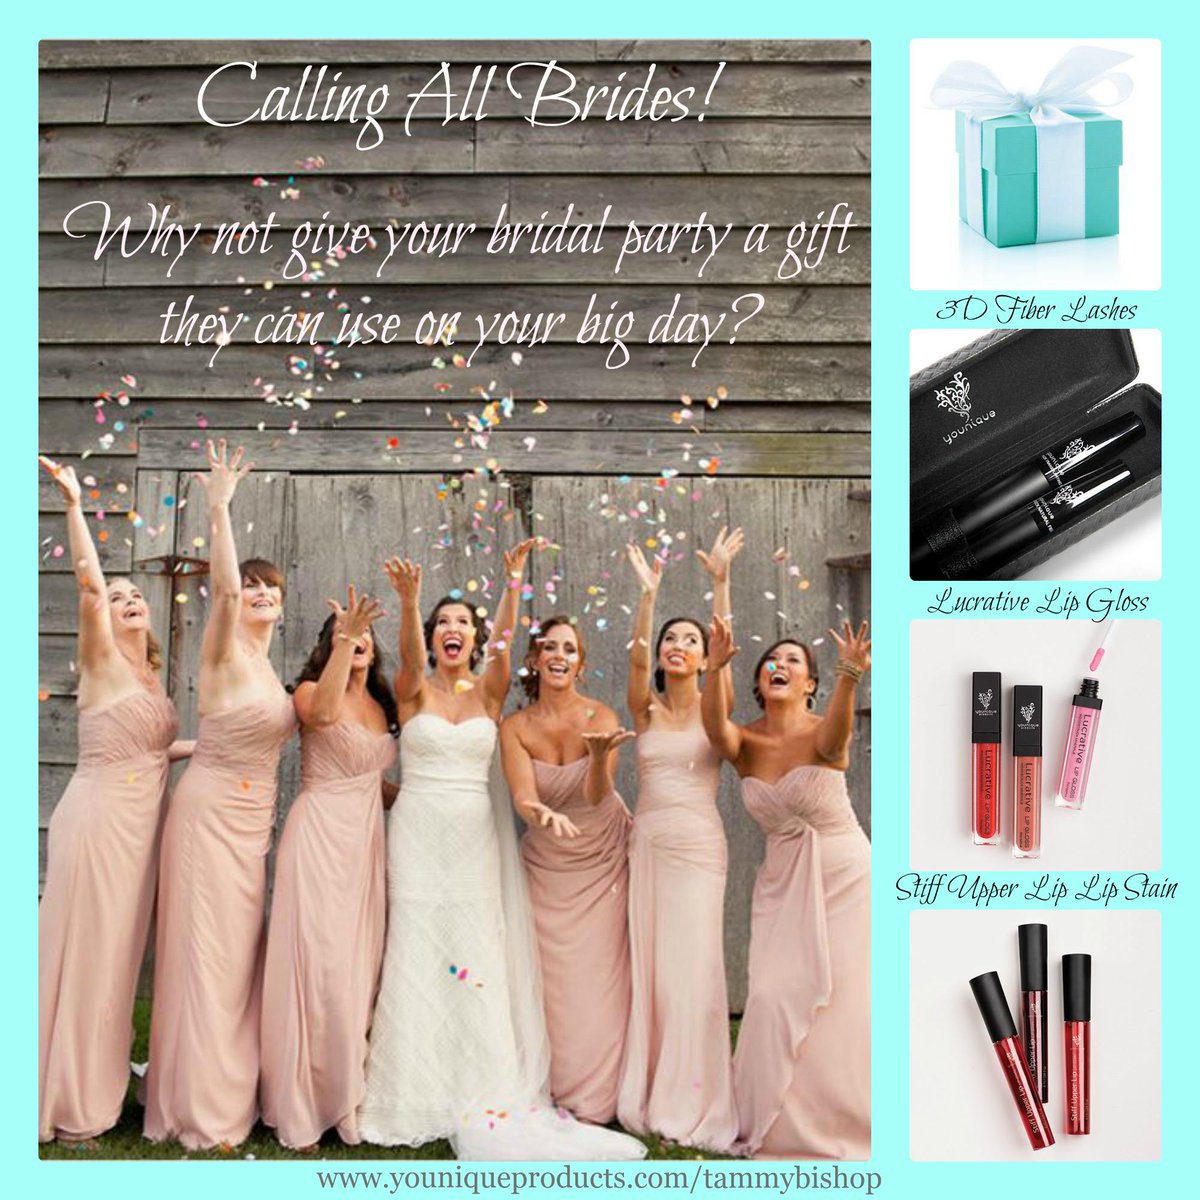 Calling all Brides!  youniqueproducts.com/tammybishop @brides @Bridesmagazine @davidsbridal @BridalMusings  @Cosmopolitan